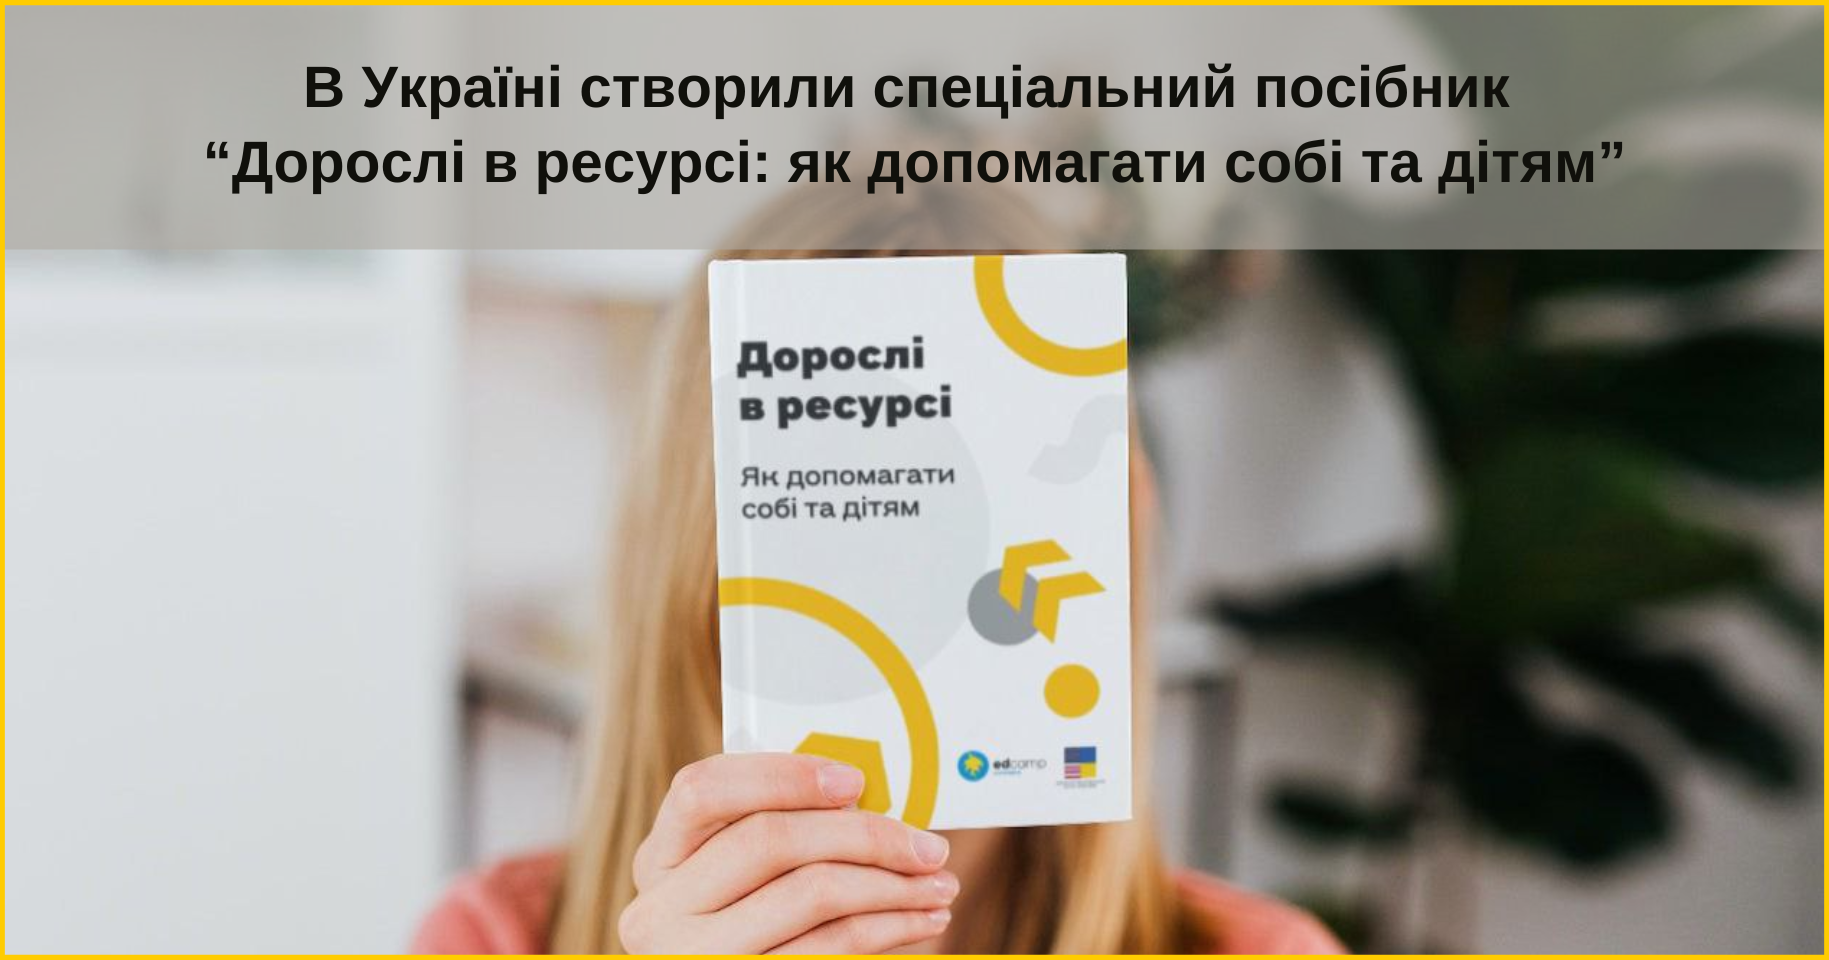 В Україні створили спеціальний посібник “Дорослі в ресурсі: як допомагати собі та дітям”